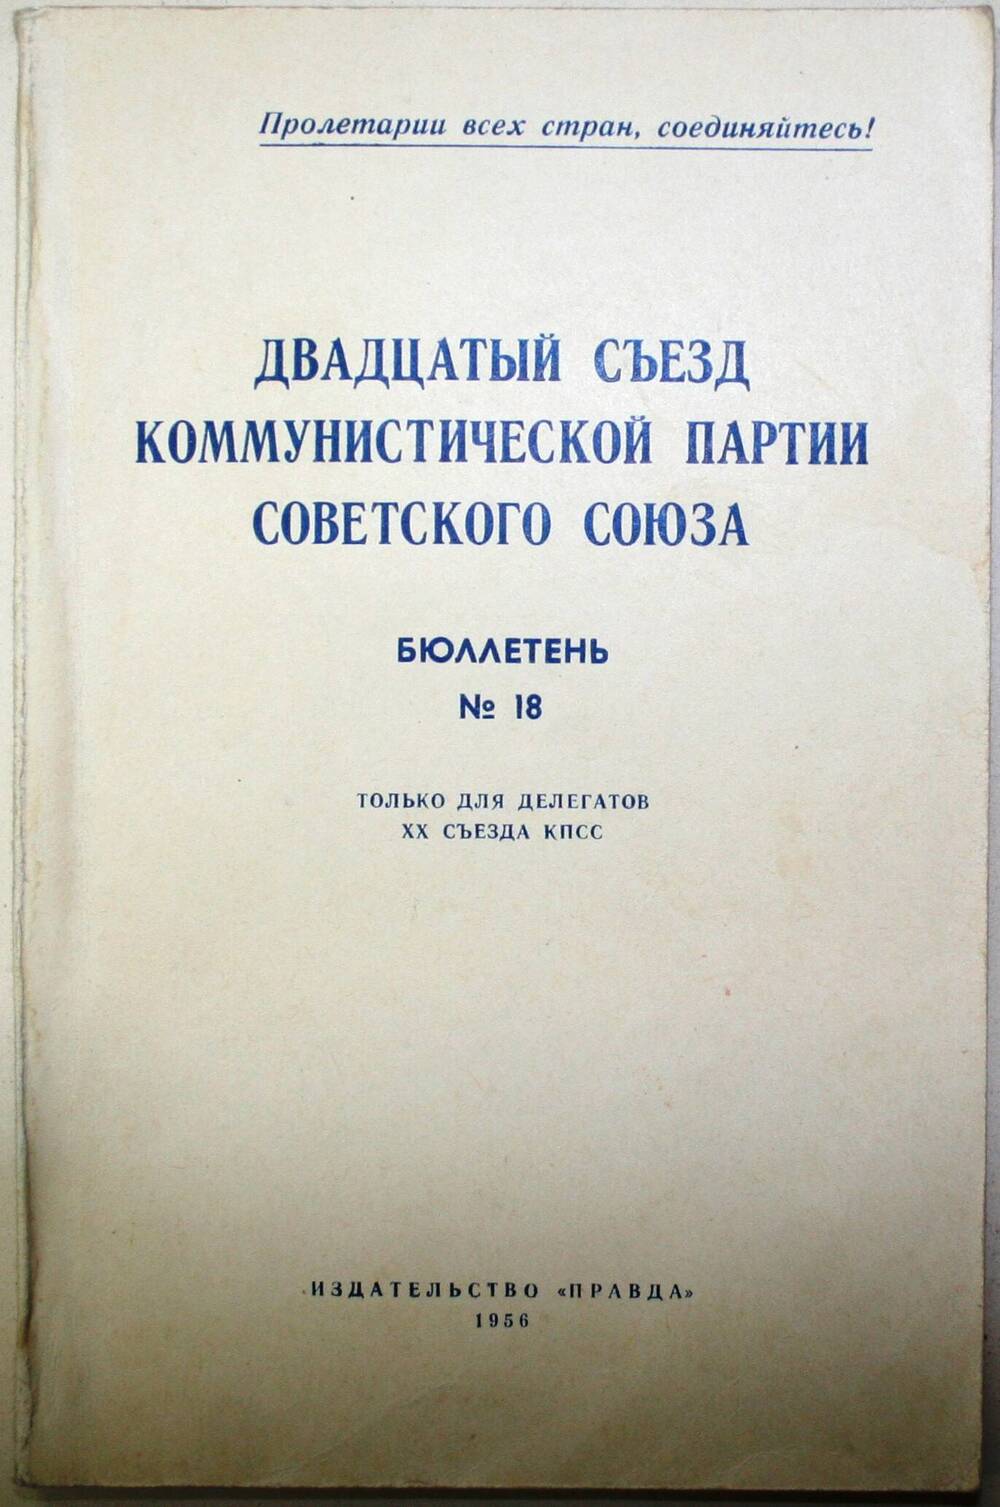 Бюллетень №18. Двадцатый съезд коммунистической партии Советского Союза.